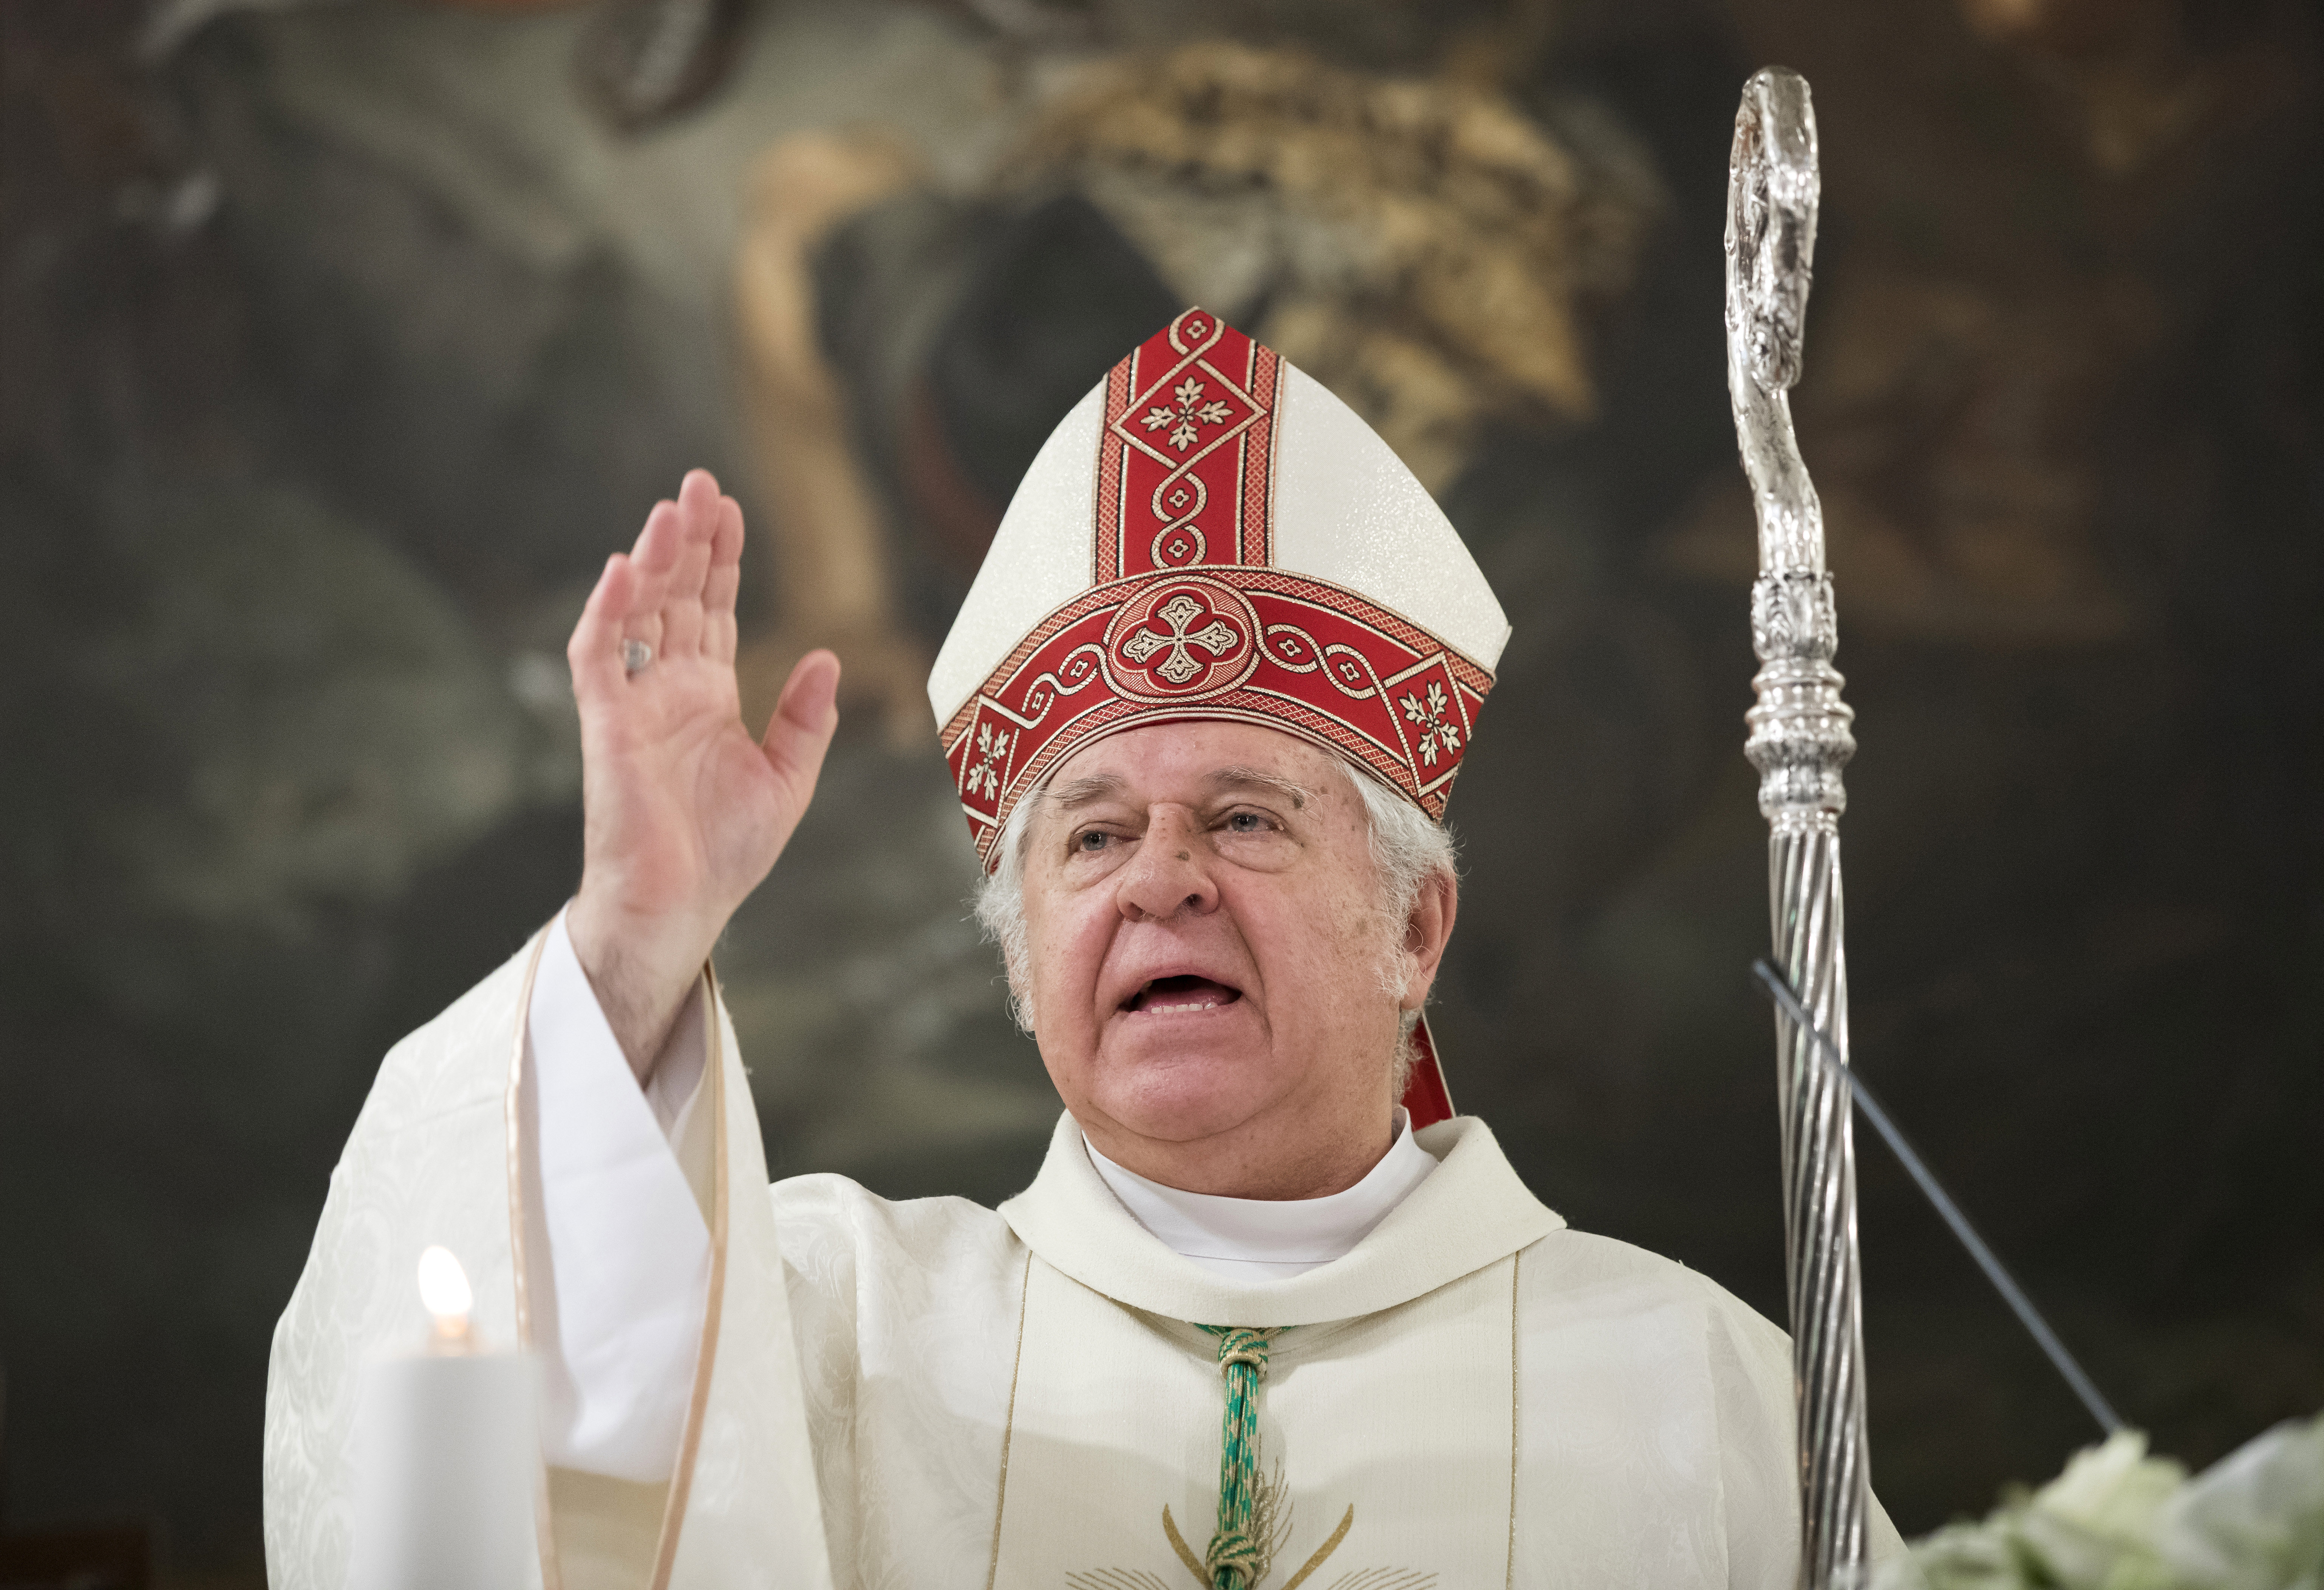 Snell György esztergom-budapesti segédpüspök misét celebrál az Istenhegyi Szent László Plébánia új óvodájának alapkőletételi ünnepsége előtt 2019. május 12-én